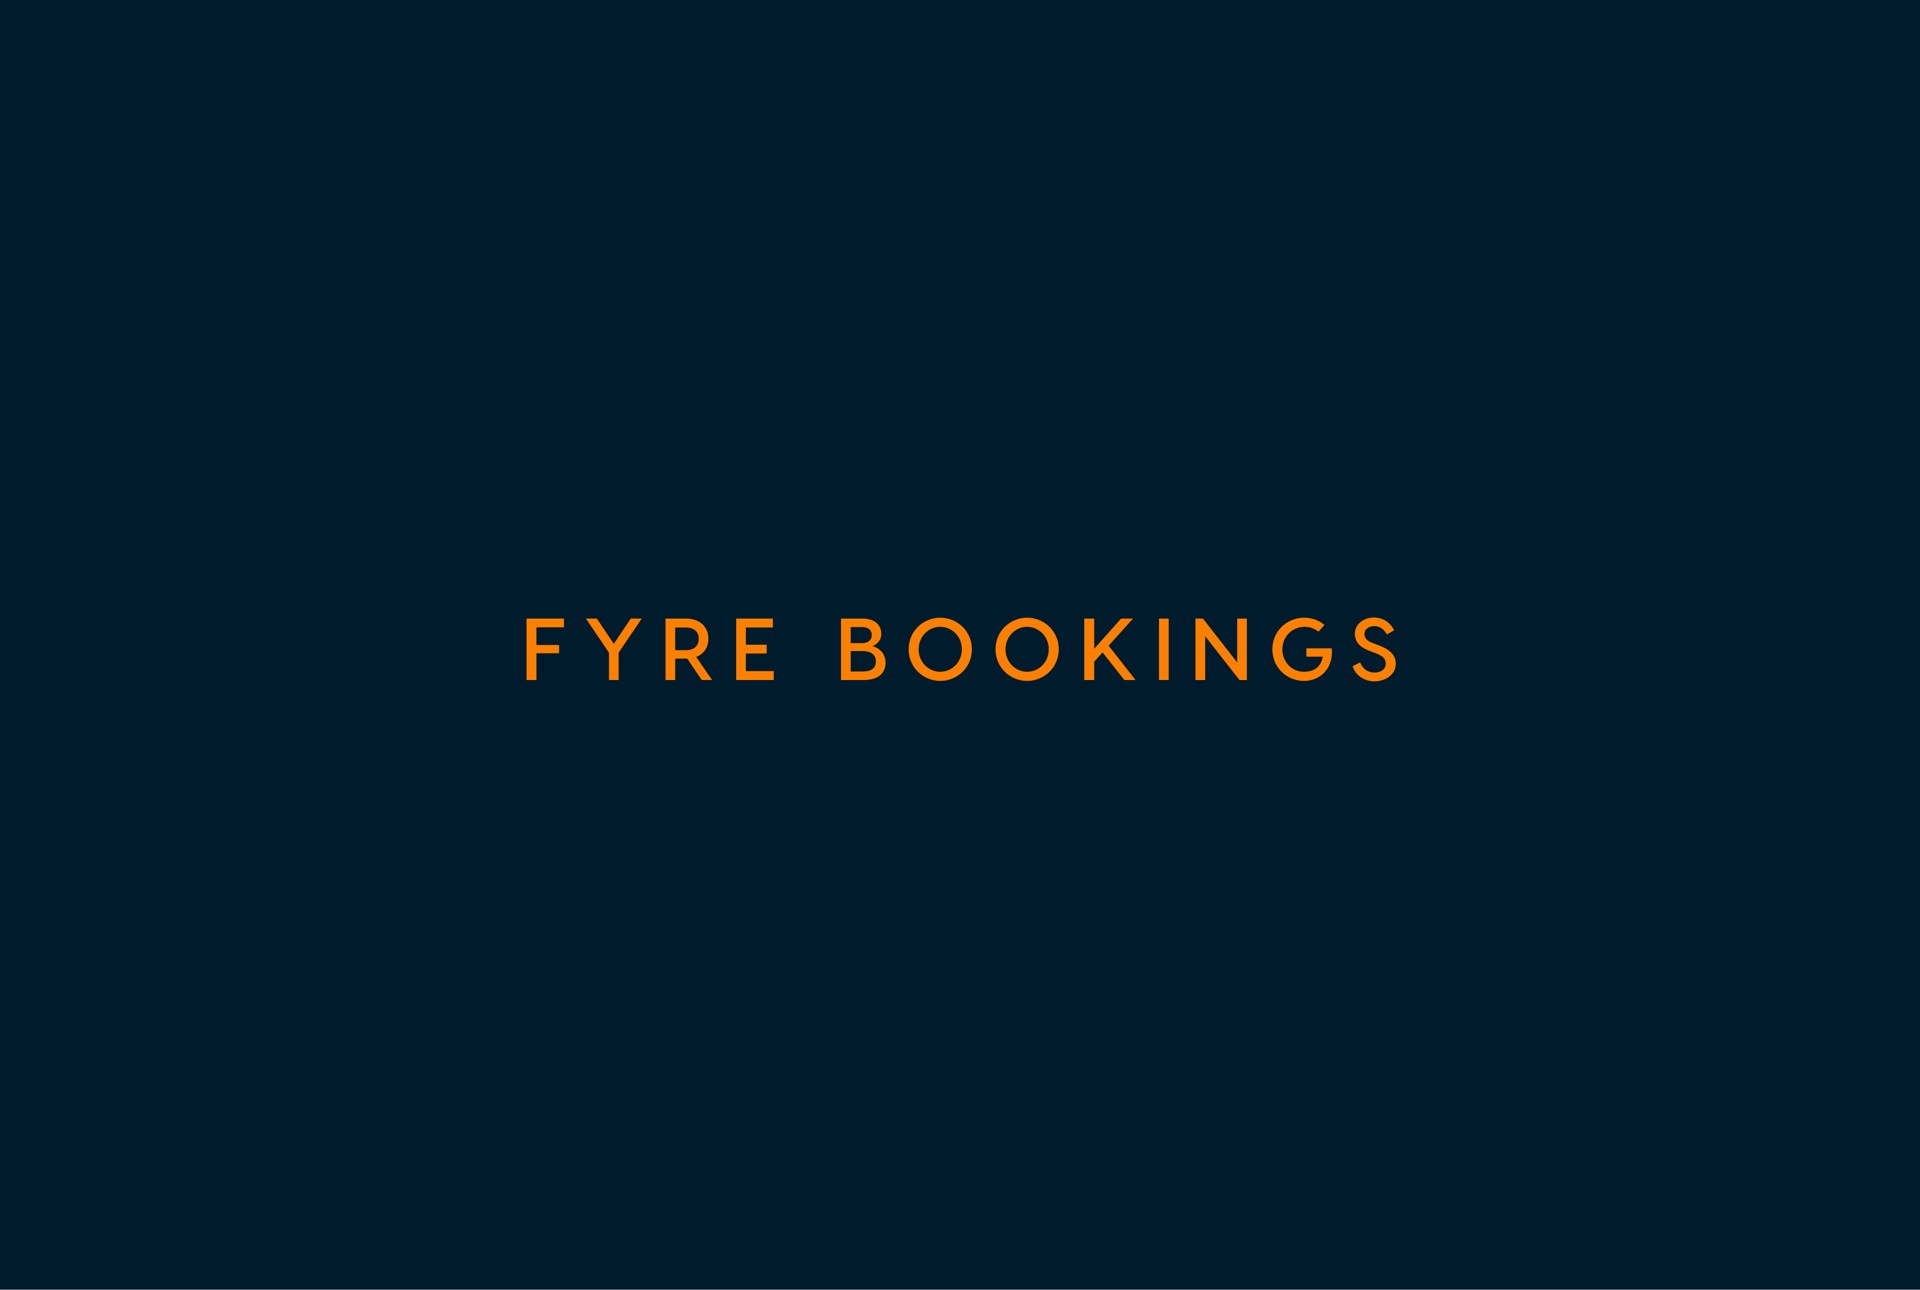 i bookings | Fyre